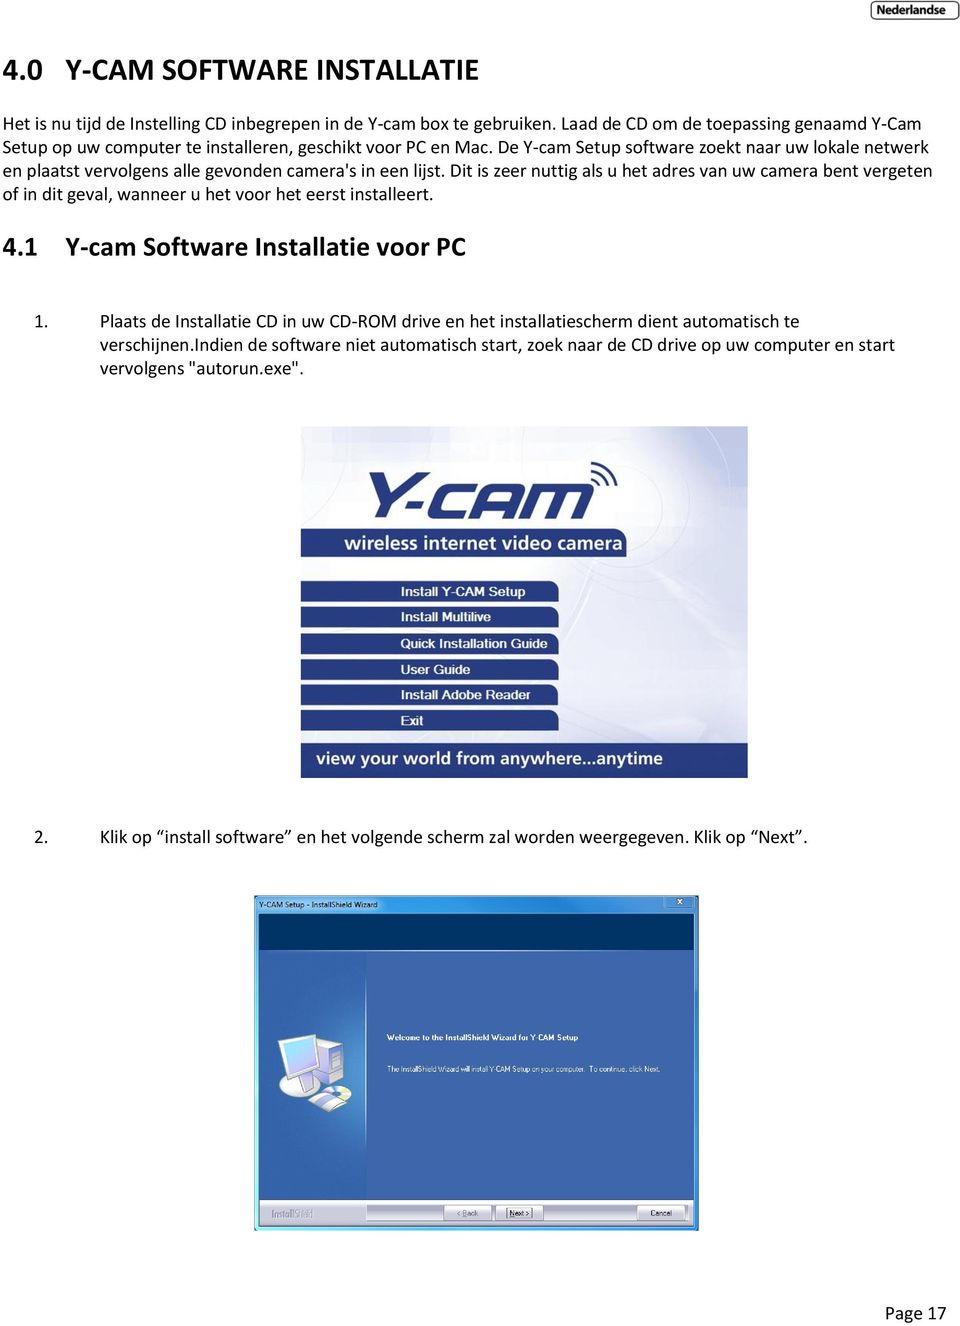 De Y-cam Setup software zoekt naar uw lokale netwerk en plaatst vervolgens alle gevonden camera's in een lijst.